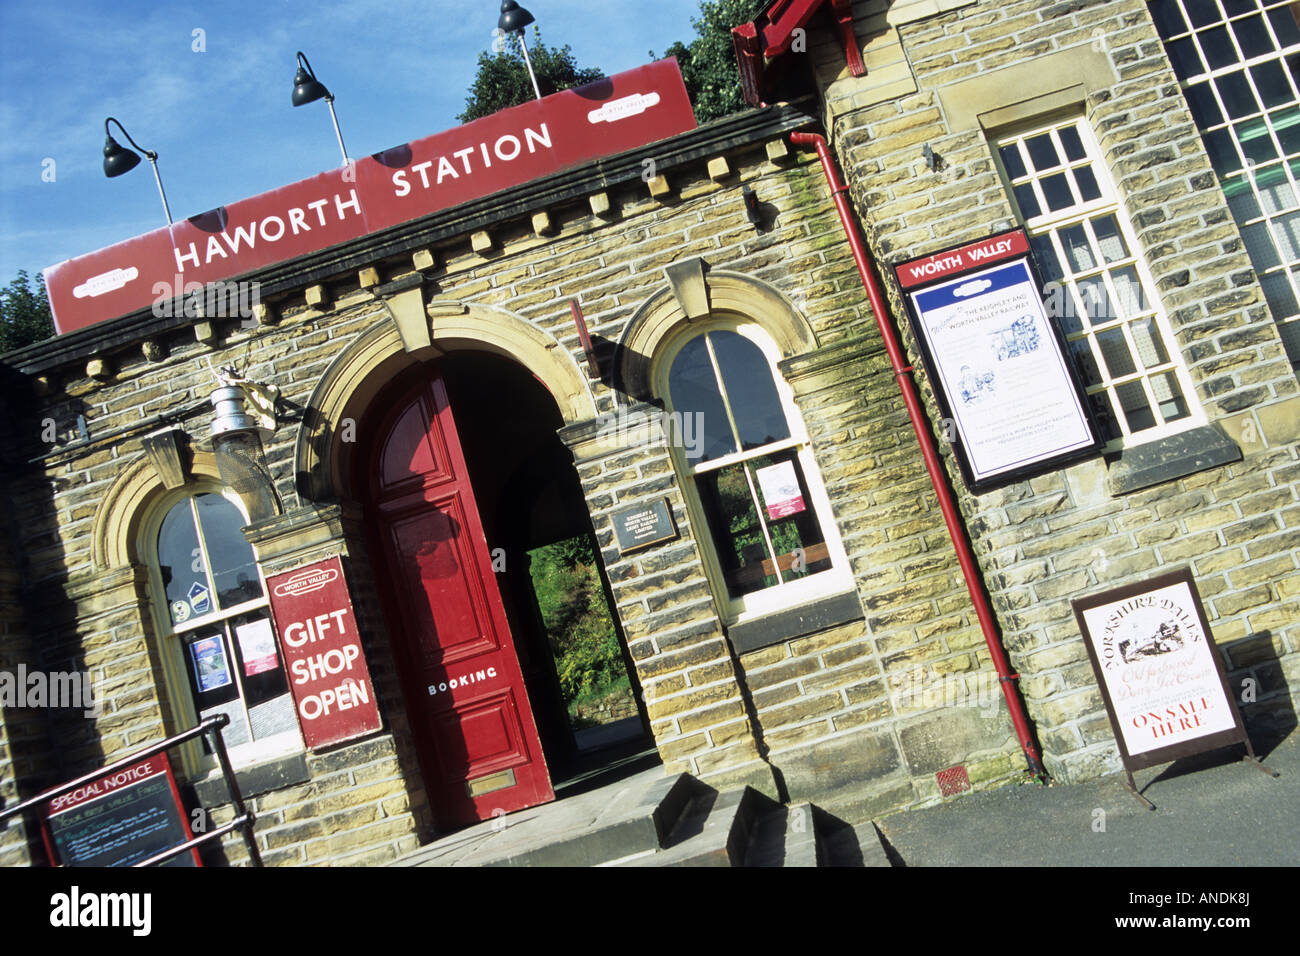 Haworth railway station, North Yorks, UK Stock Photo